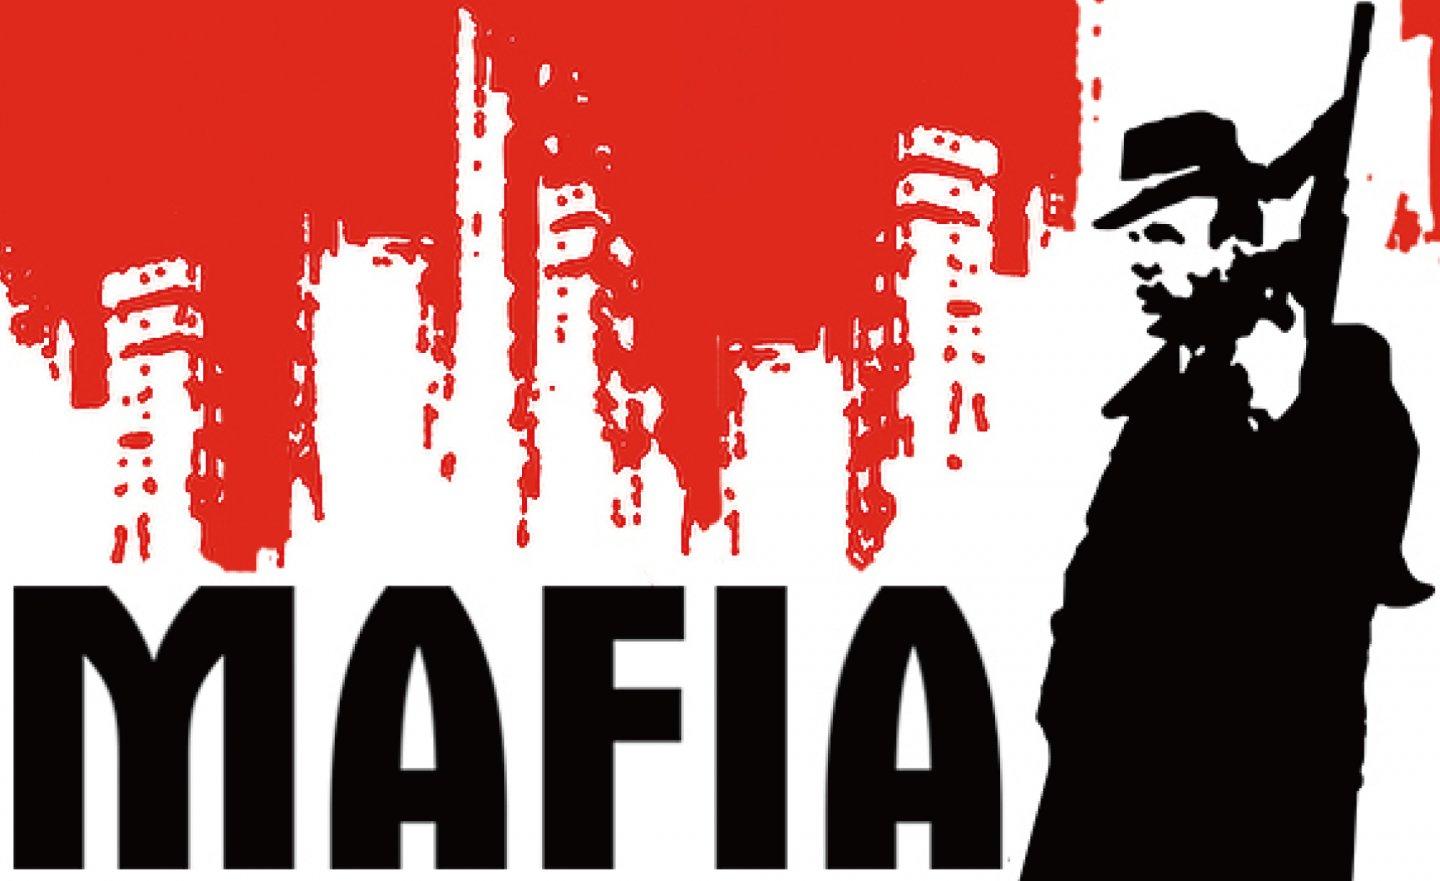 【限時免費】登入 Steam 領取 2K 經典遊戲《Mafia 四海兄弟》，9 月 6 日 上午 1:00 前即可永久保留